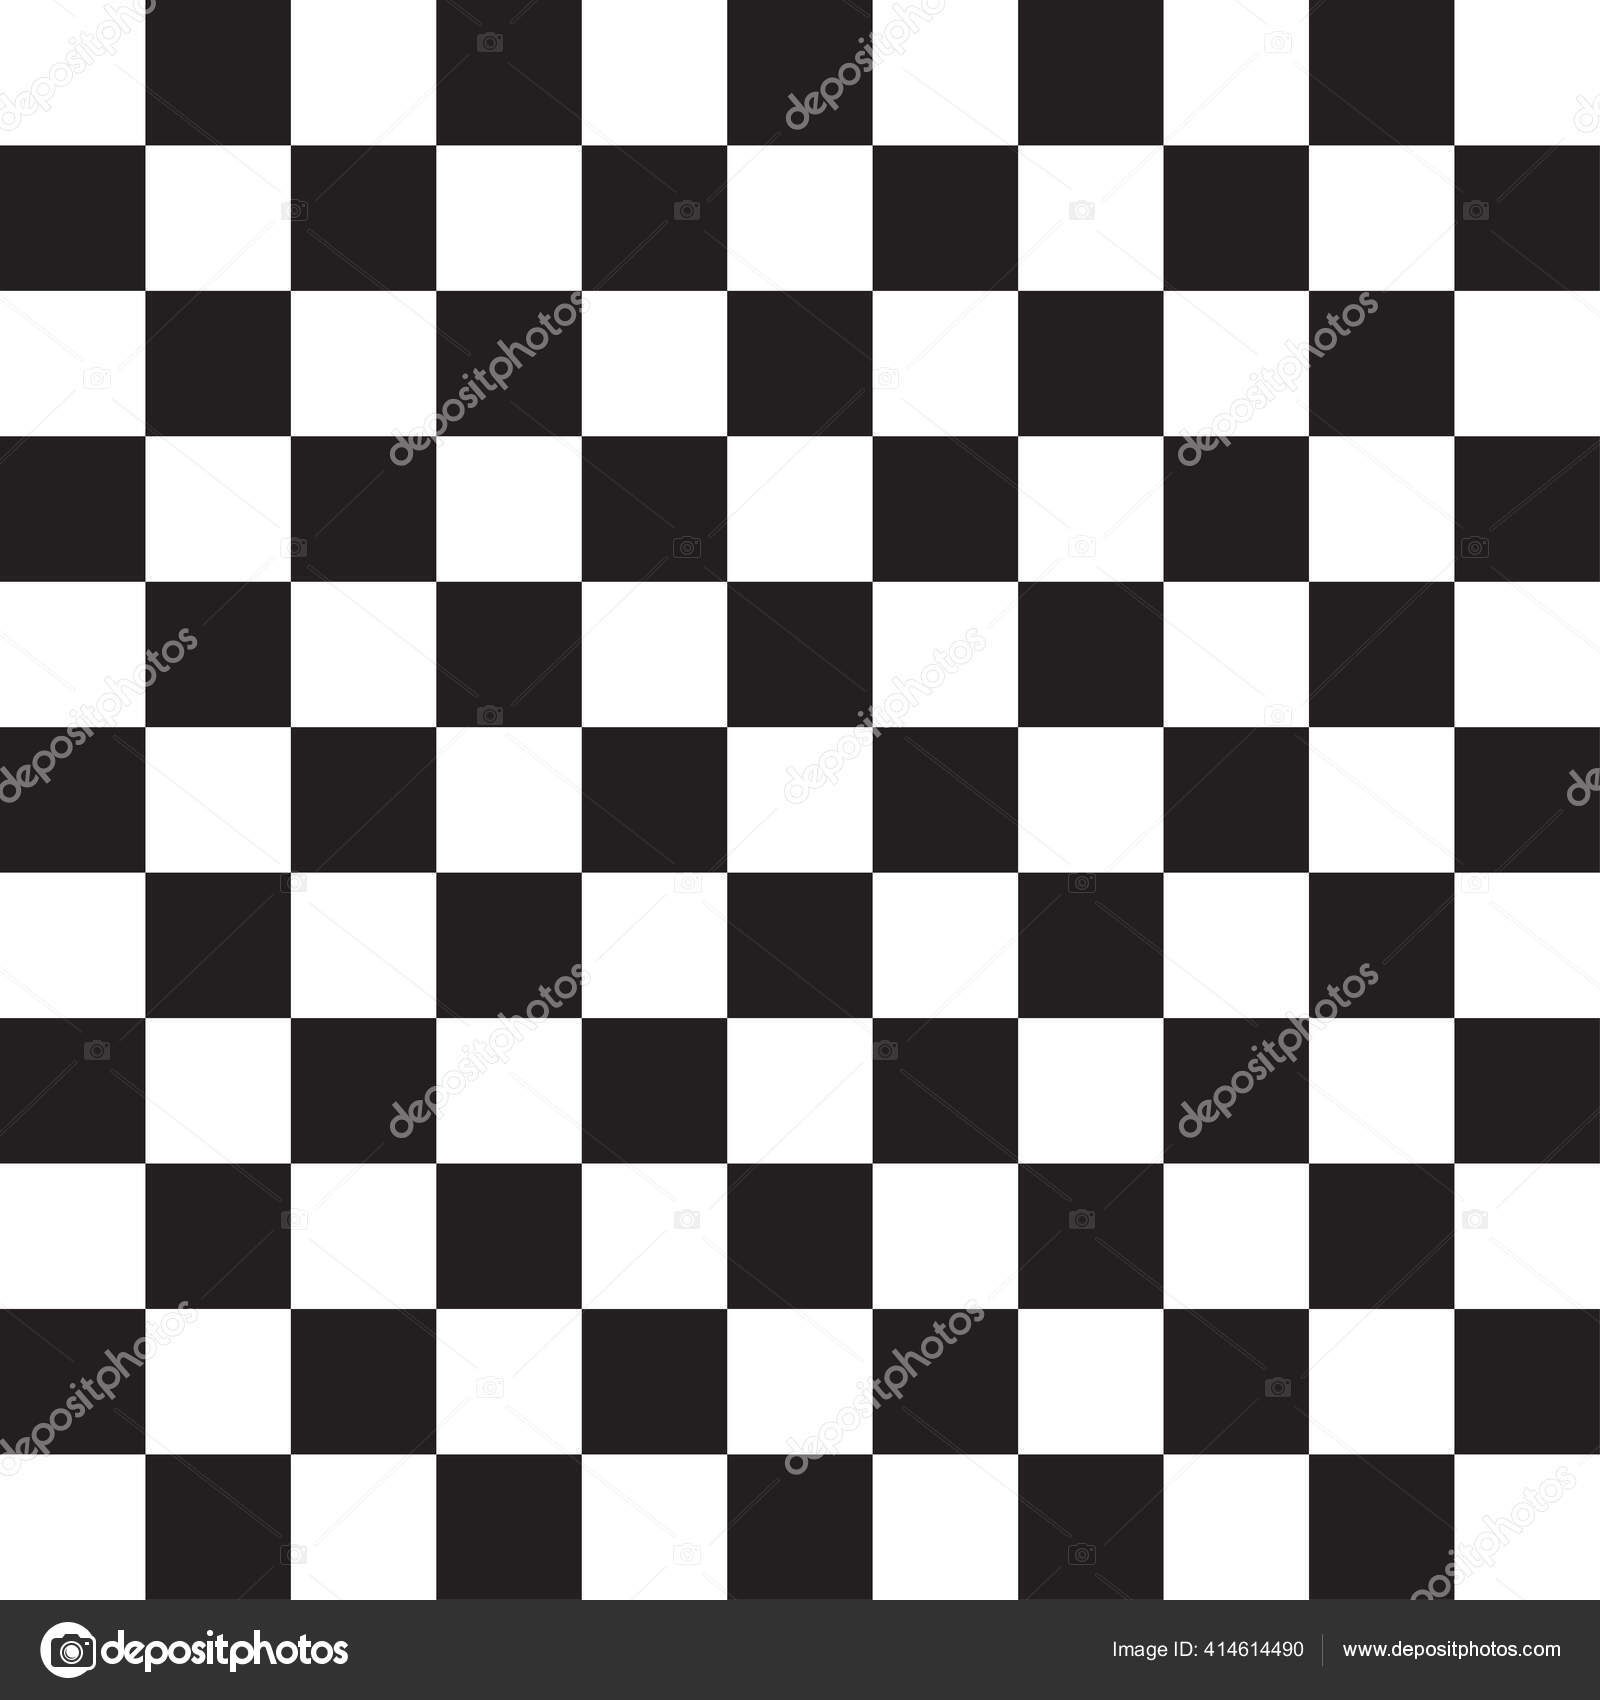 方块样式和背景棋盘棋盘棋盘质感图案简单而基本的单色胡椒色交替正方形背景 图库矢量图像 C Vectorguy